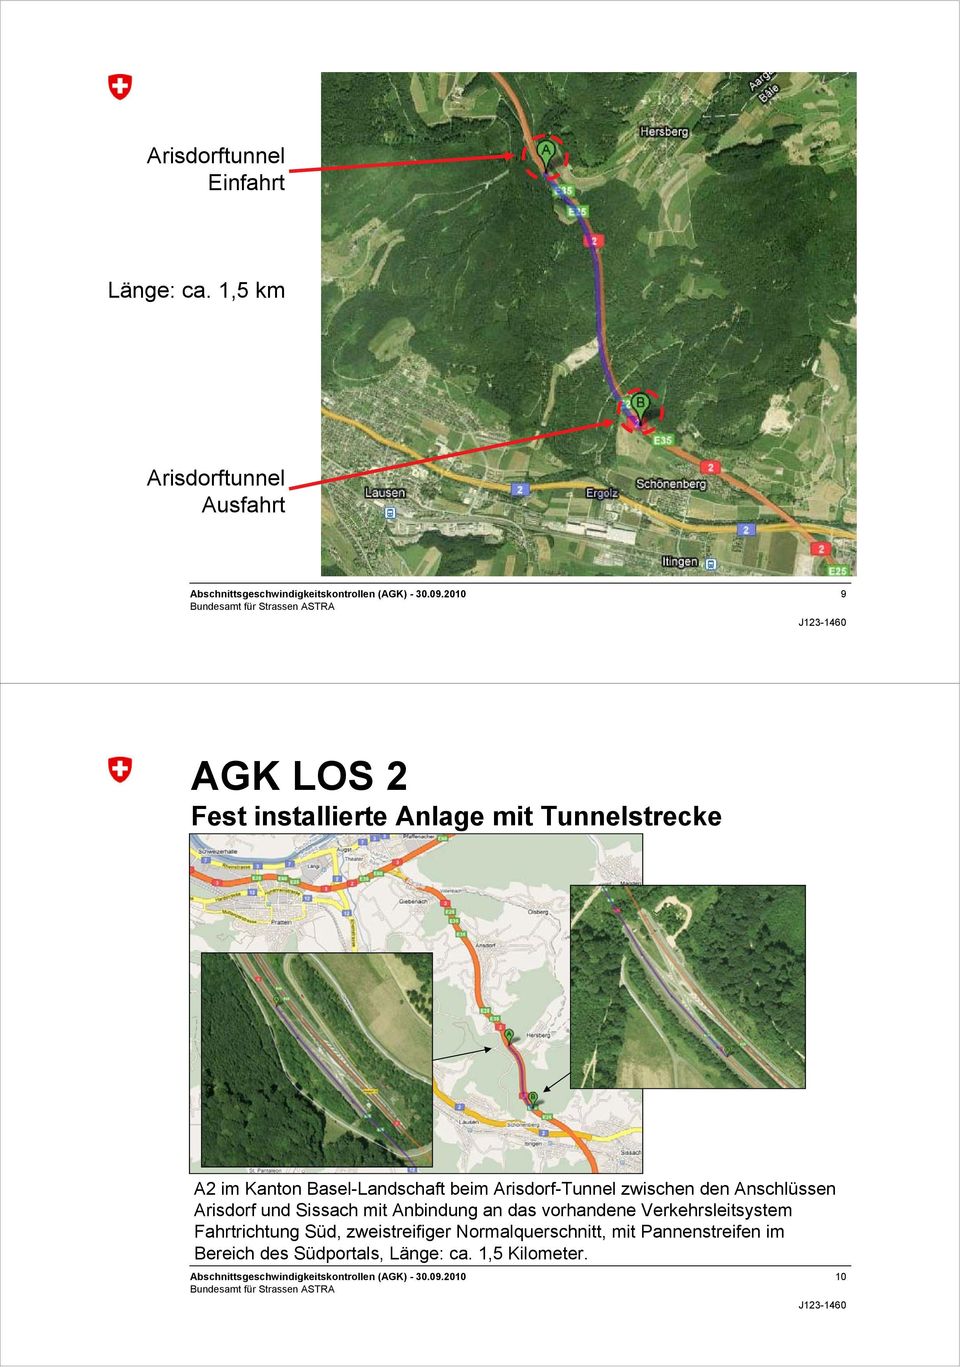 Anschlüssen Arisdorf und Sissach mit Anbindung an das vorhandene Verkehrsleitsystem Fahrtrichtung Süd, zweistreifiger